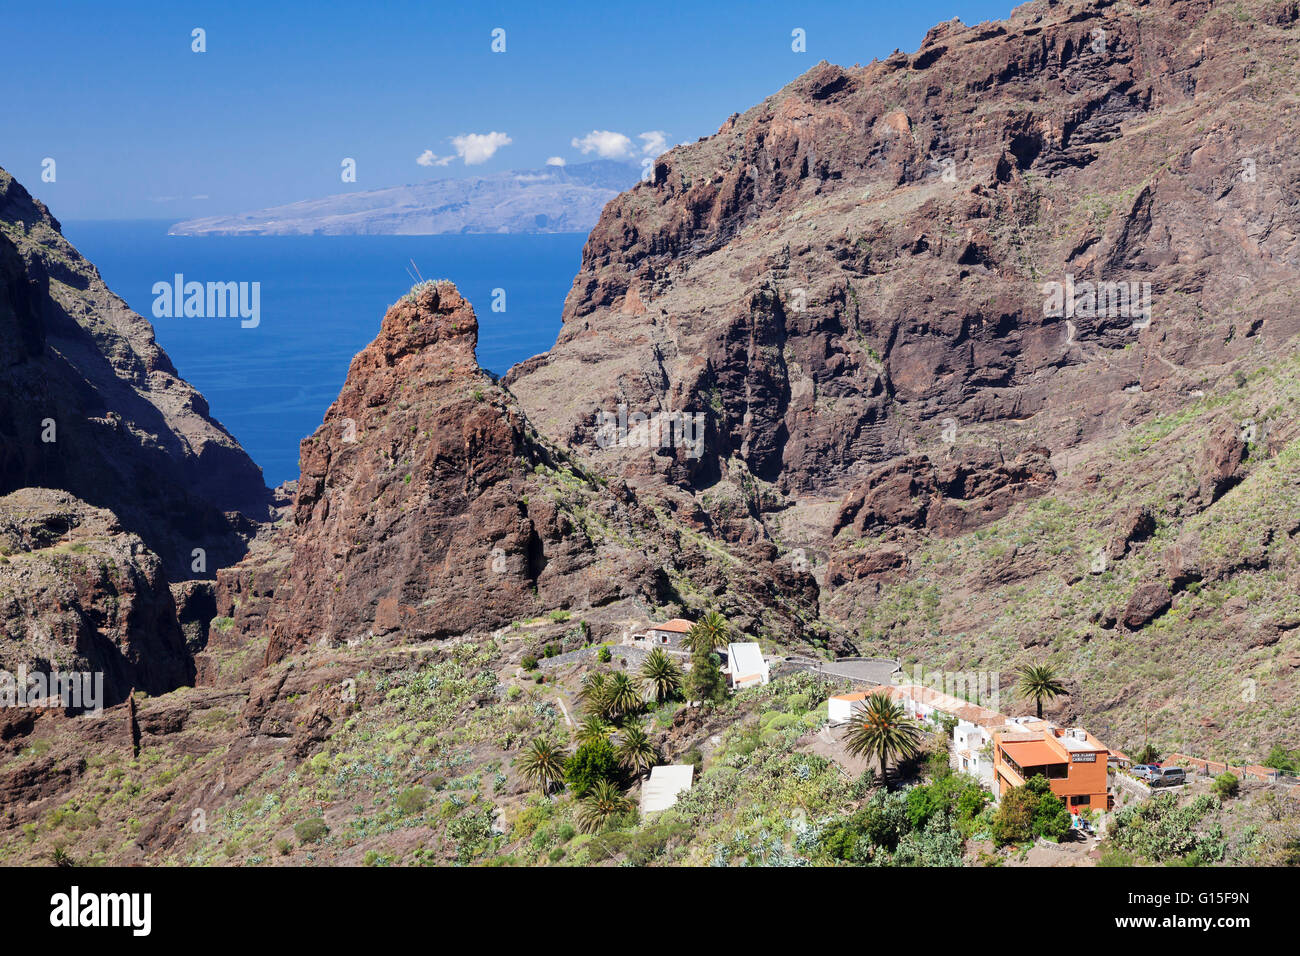 Aldea de montaña de Masca, montañas Teno, Tenerife, Islas Canarias, España, Europa Foto de stock